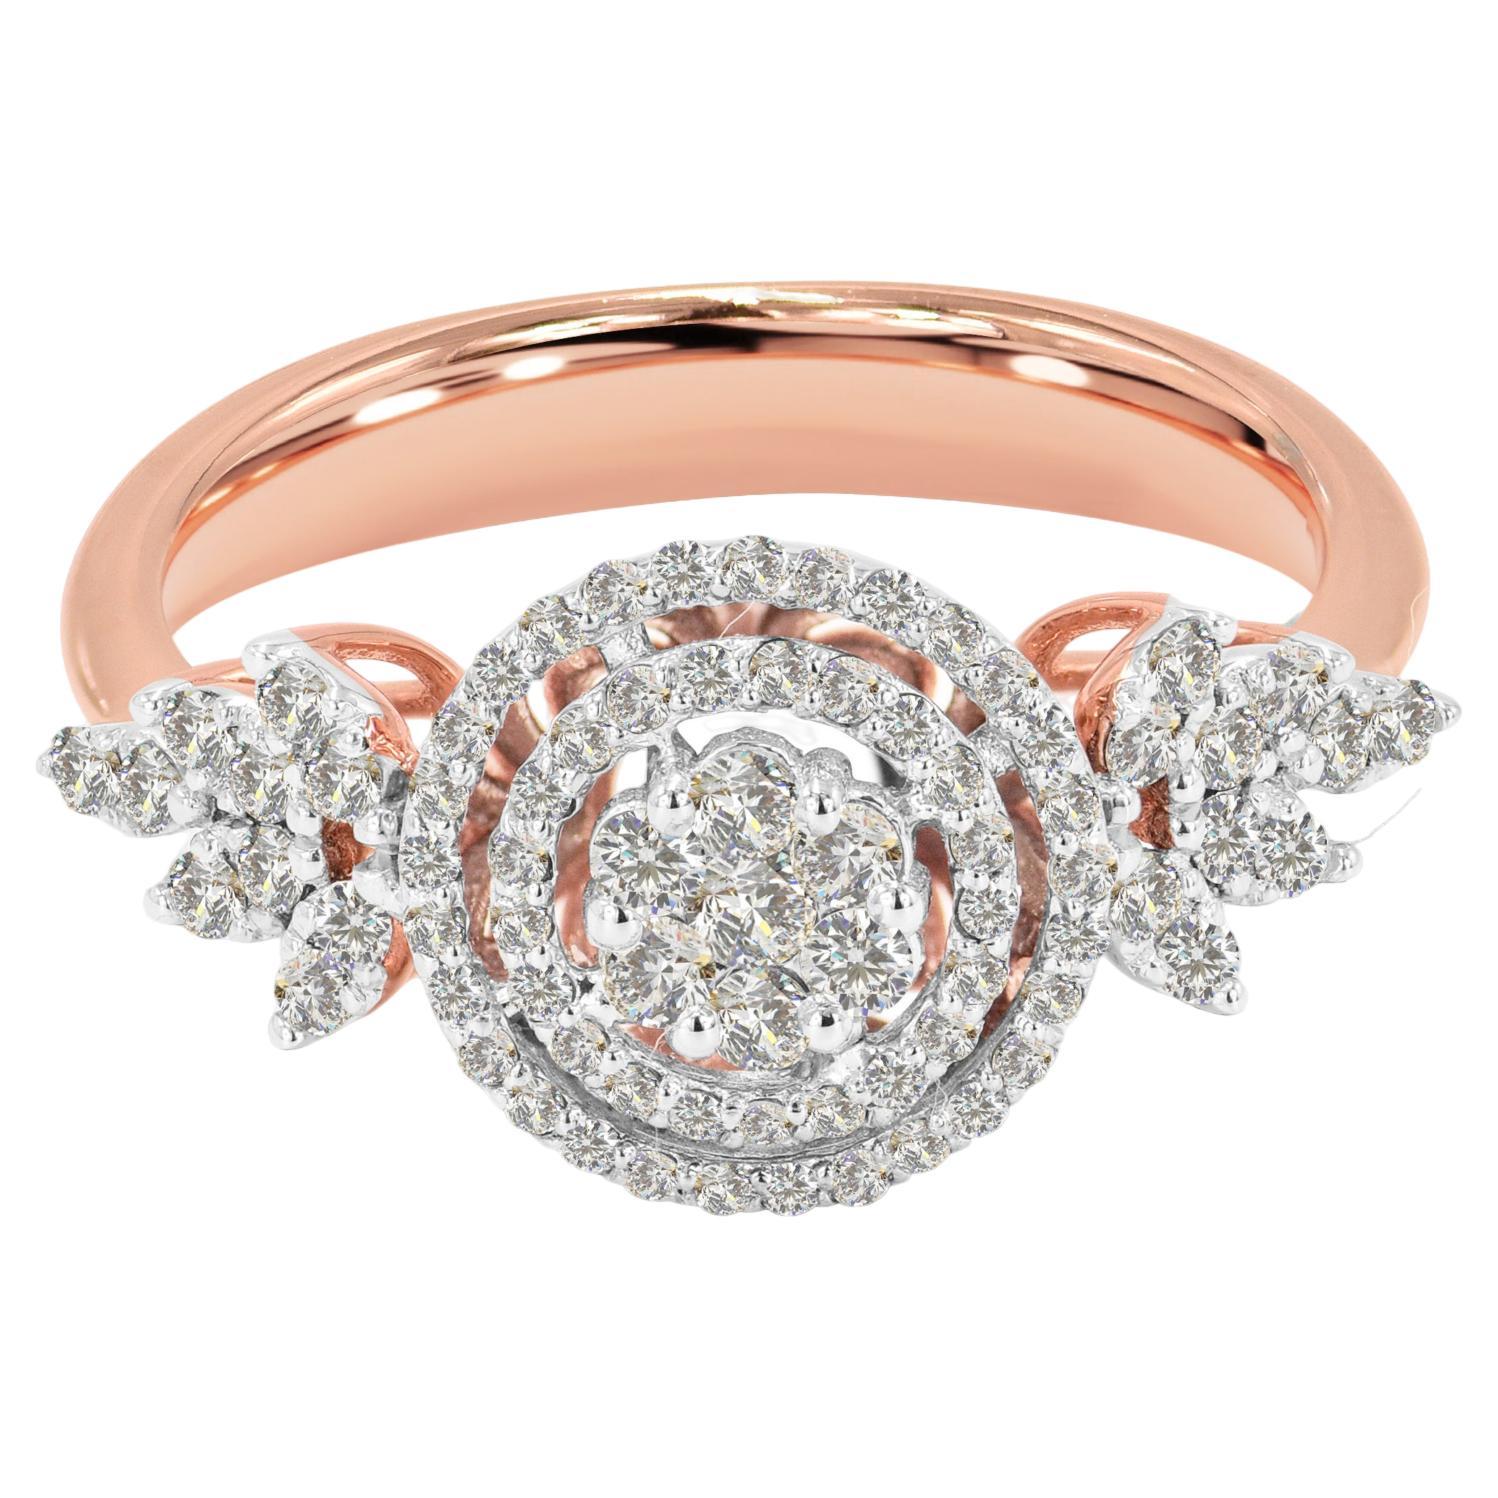 Engagement Diamond Ring in 18 Karat Rose Gold Natural Round Diamond Ring